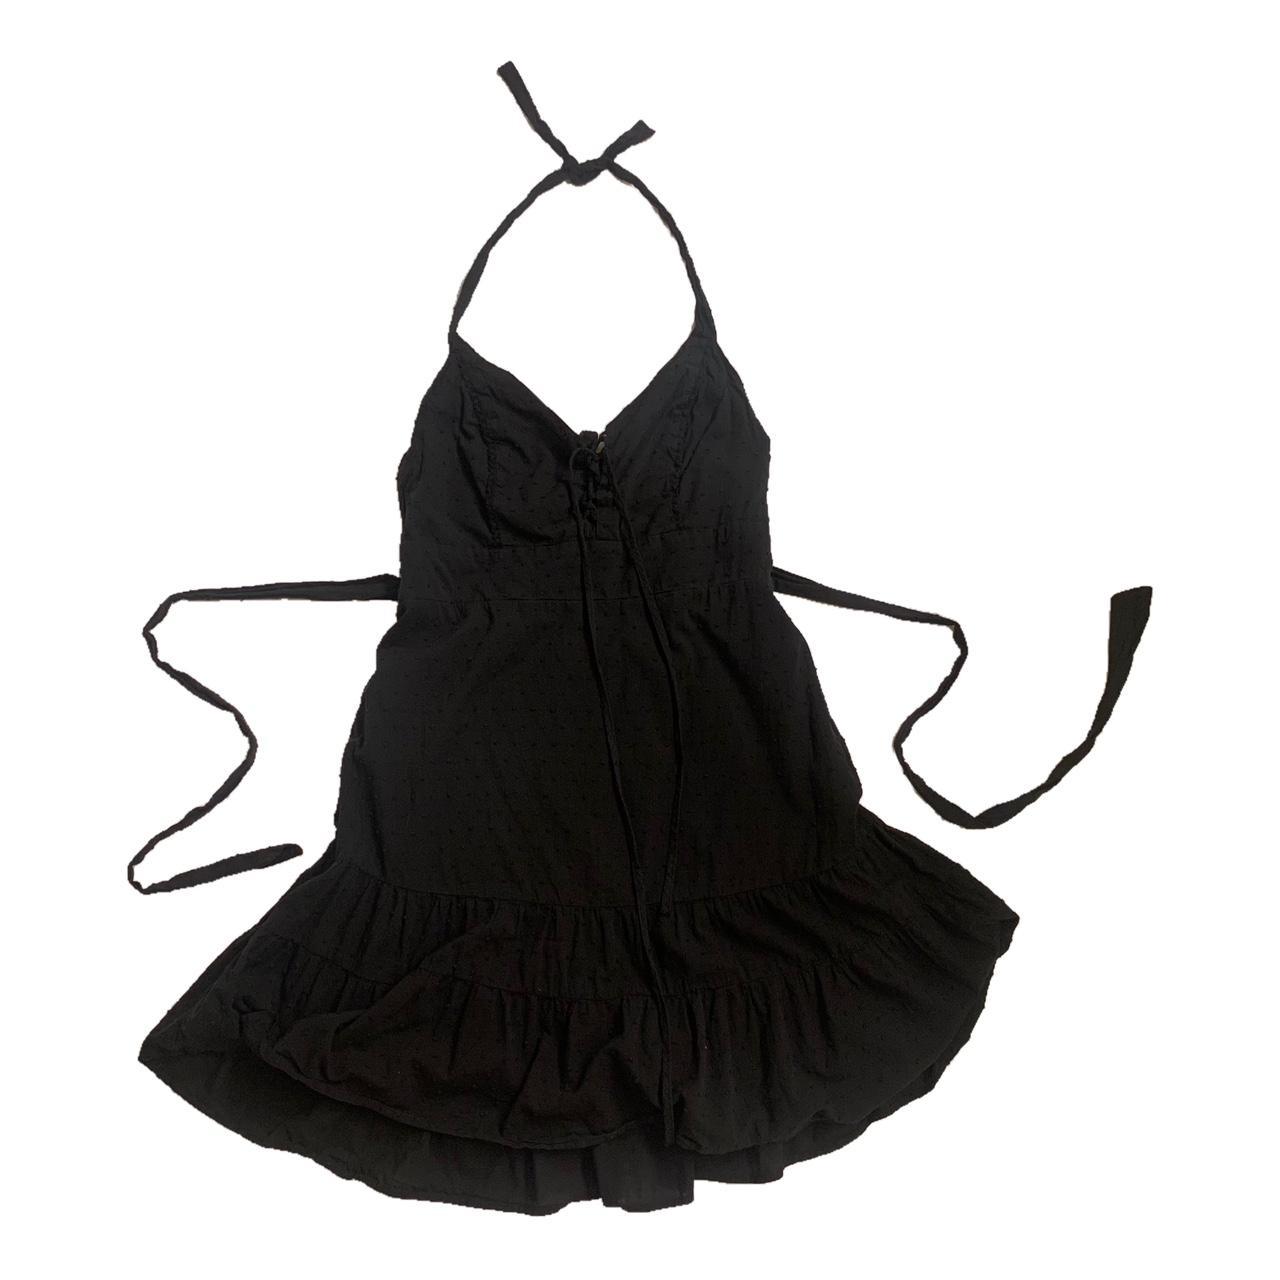 Black halter top mini dress! -Size Large -barely... - Depop